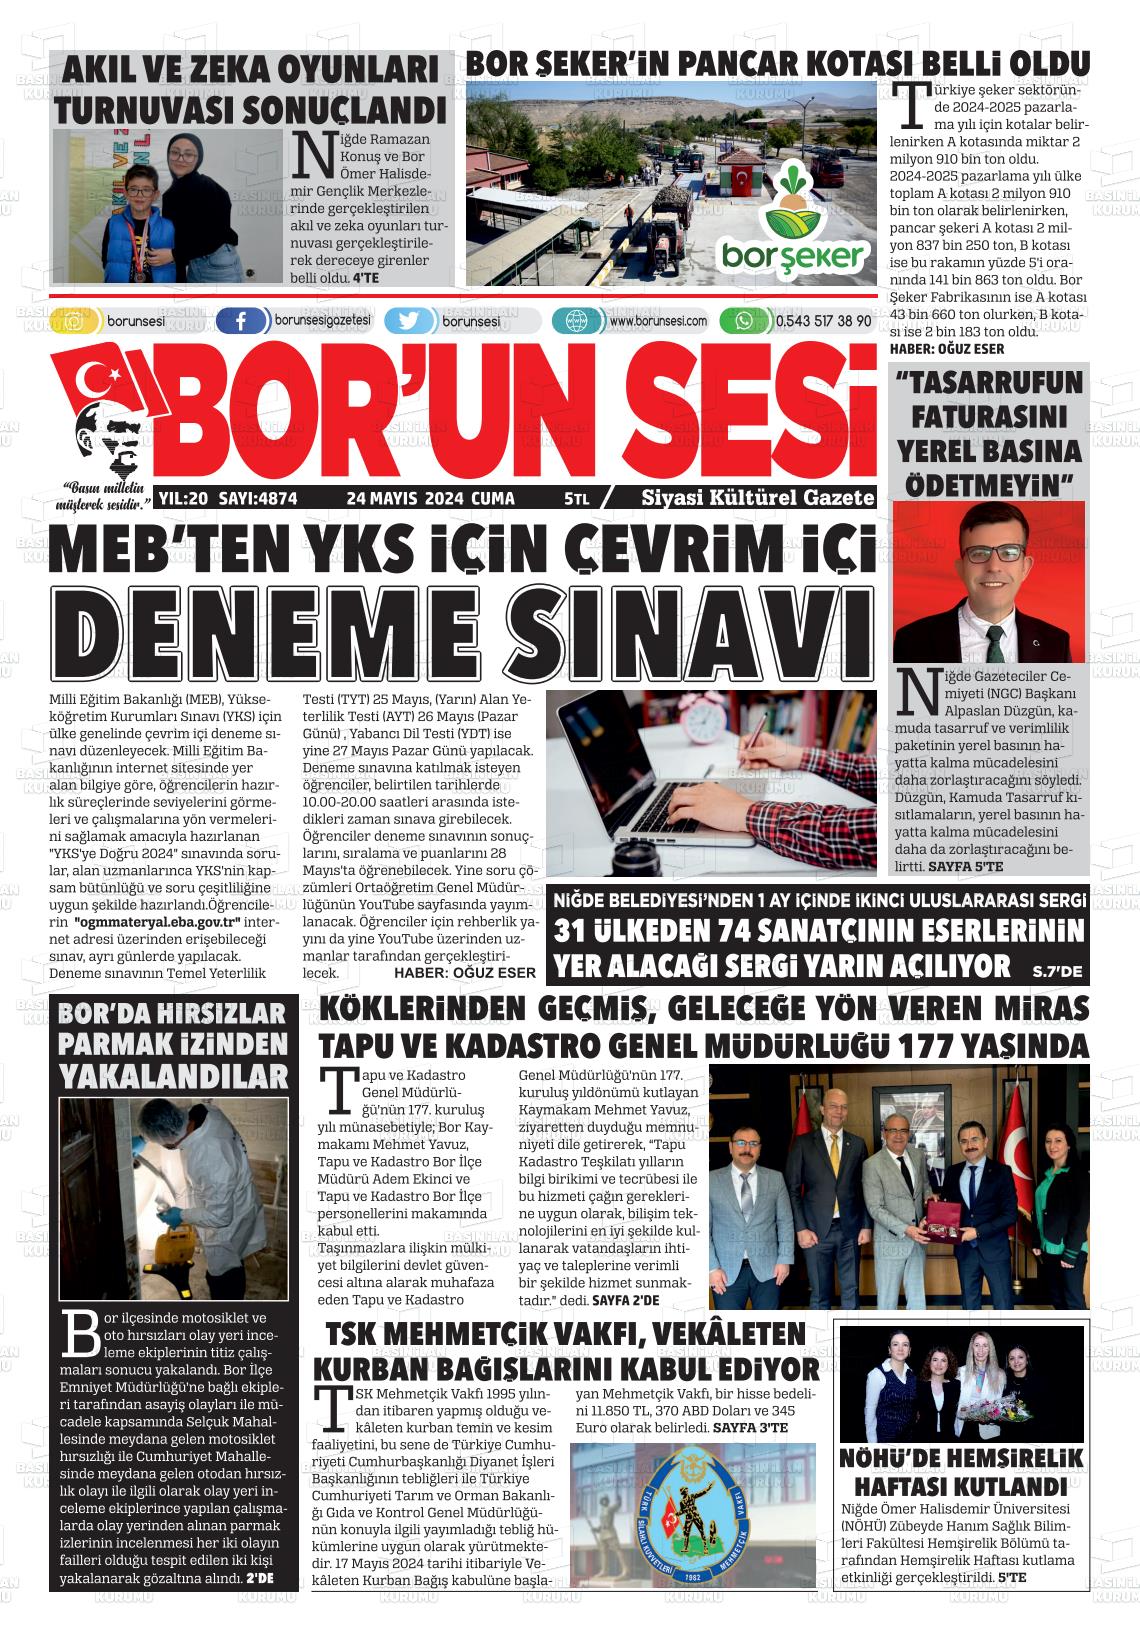 BORUN SESİ Gazetesi